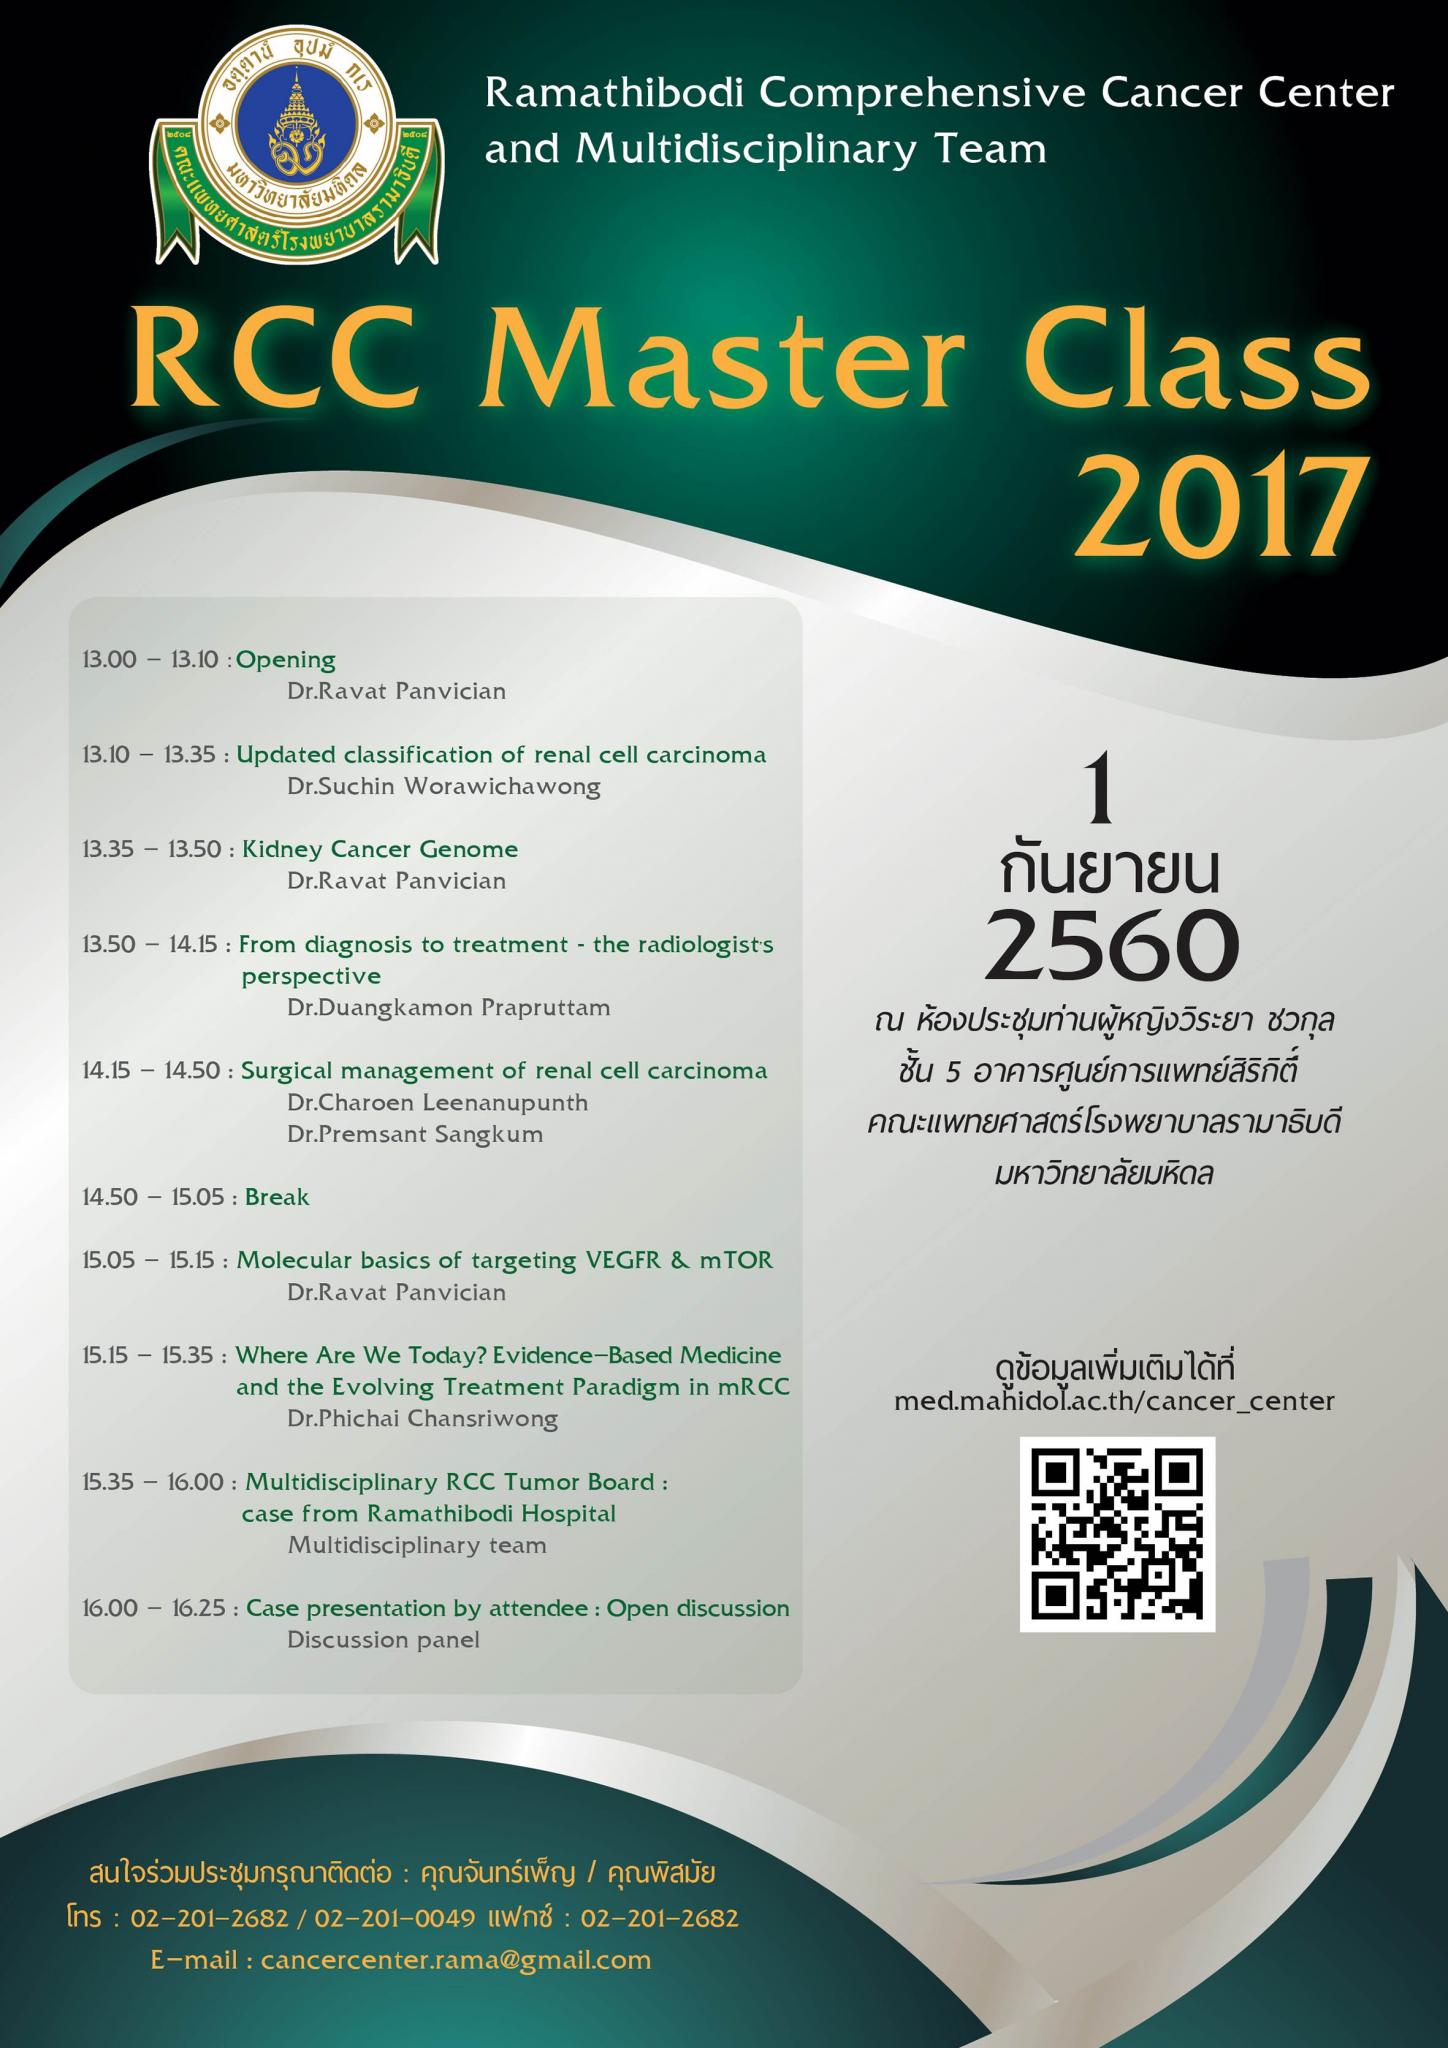 ขอเชิญเข้าร่วมประชุม RCC Master Class 2017